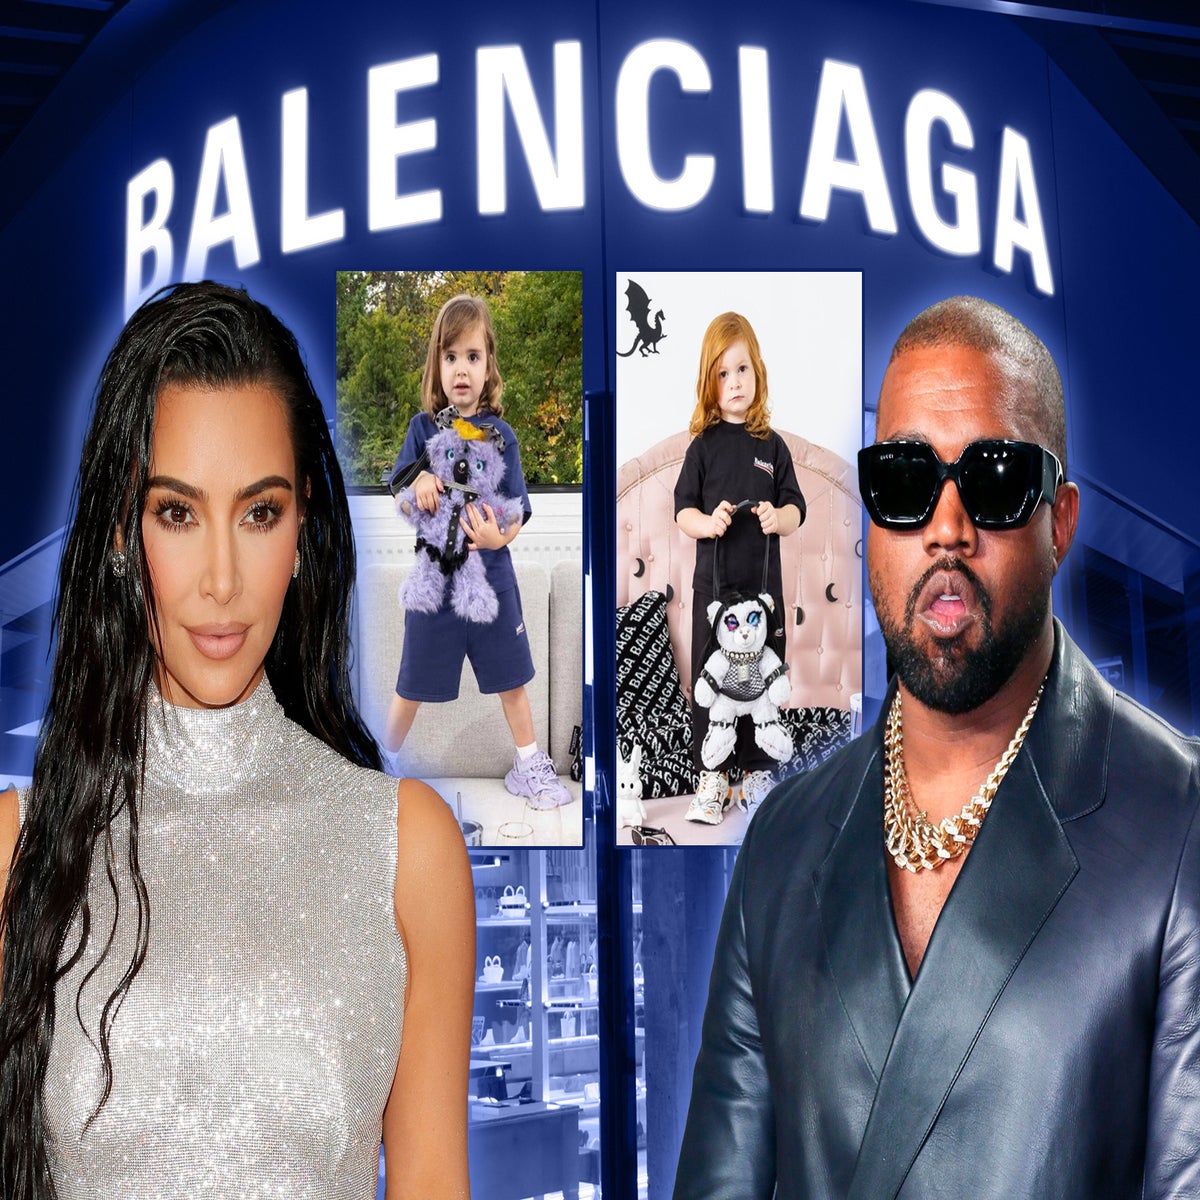 Balenciaga controversy: Will the stars cancel the luxury fashion brand?